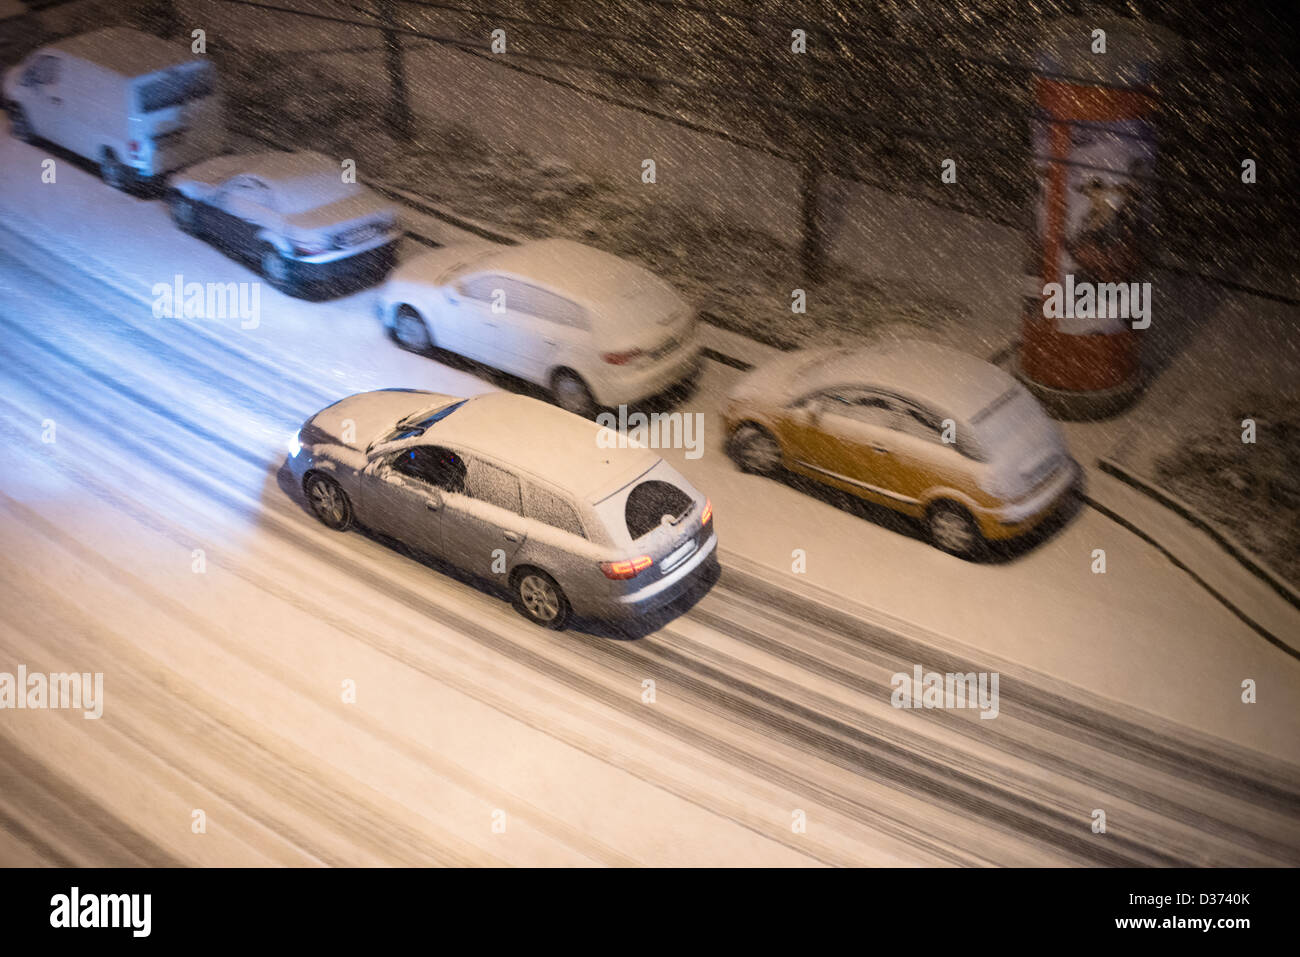 Vue de dessus sur les voitures garées le long d'une rue et une voiture conduite de nuit dans la neige de l'hiver Banque D'Images